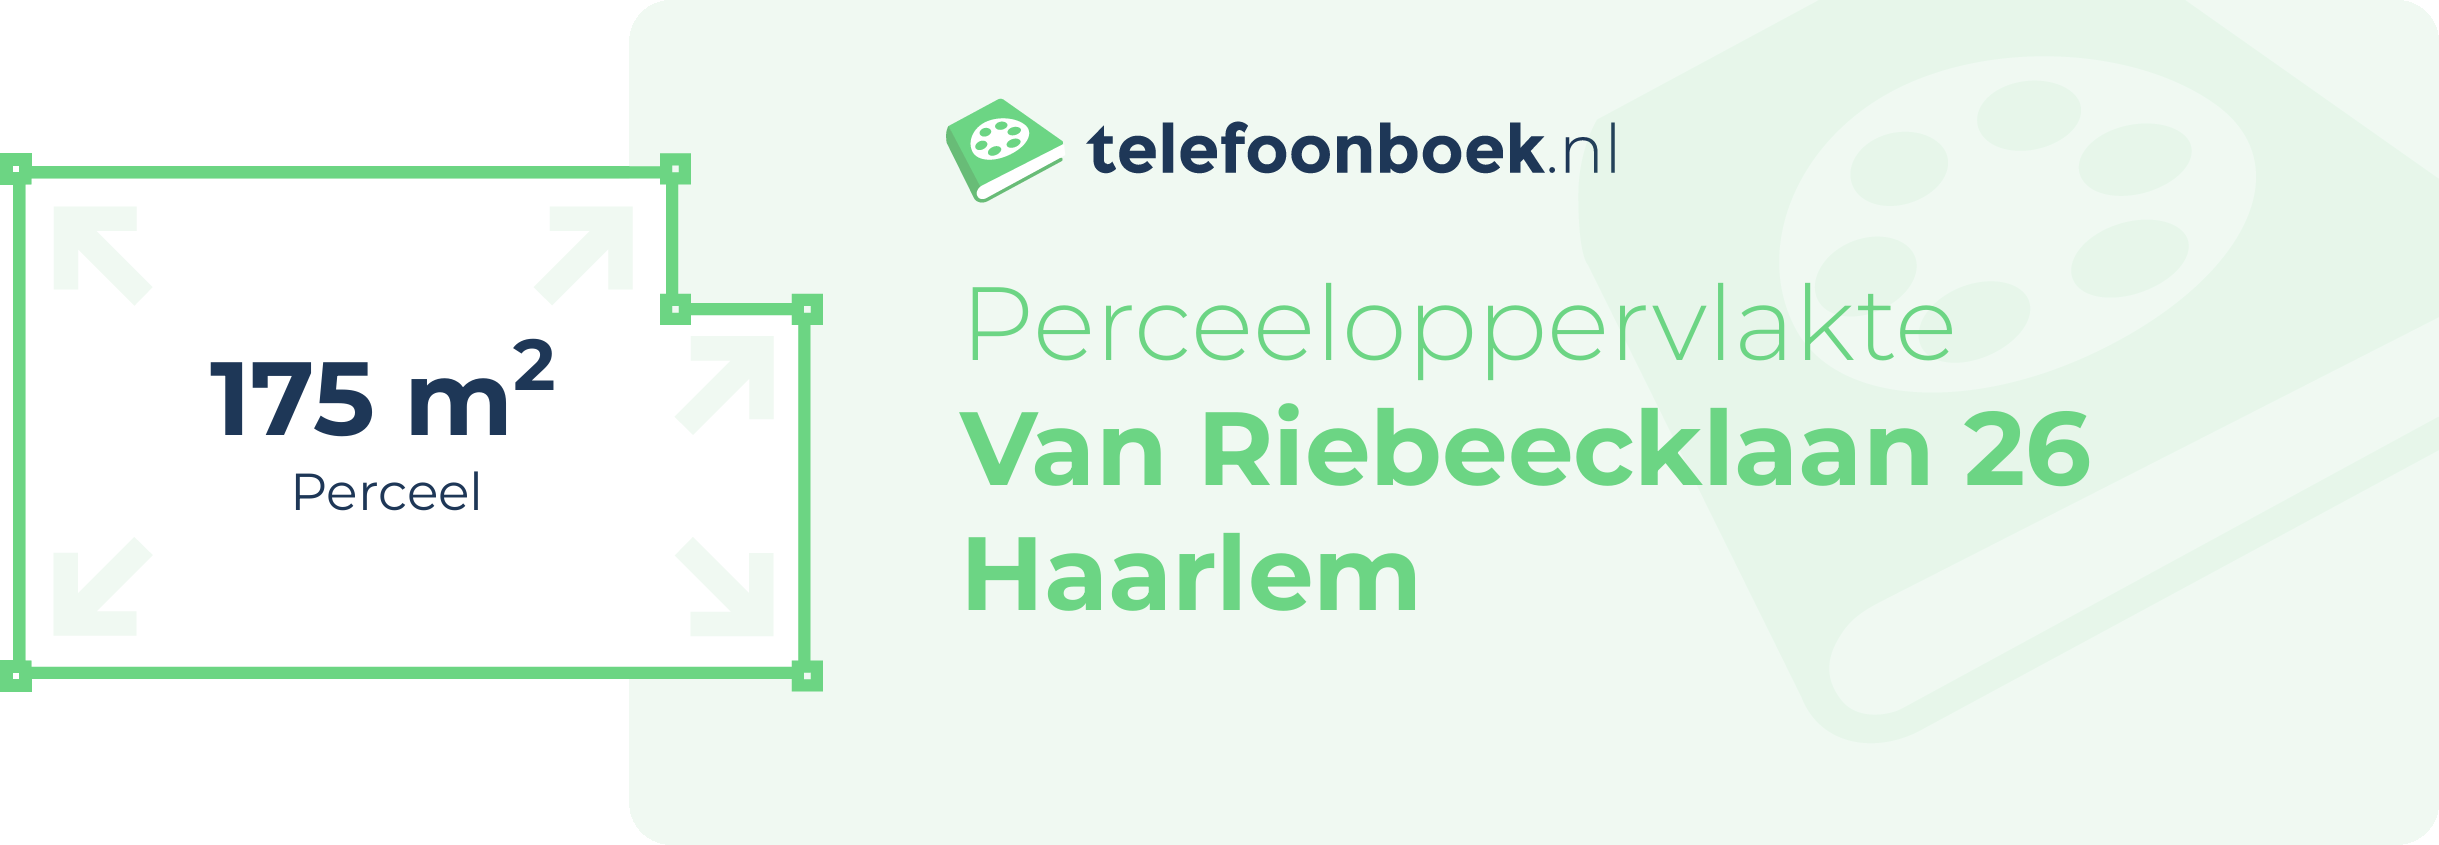 Perceeloppervlakte Van Riebeecklaan 26 Haarlem